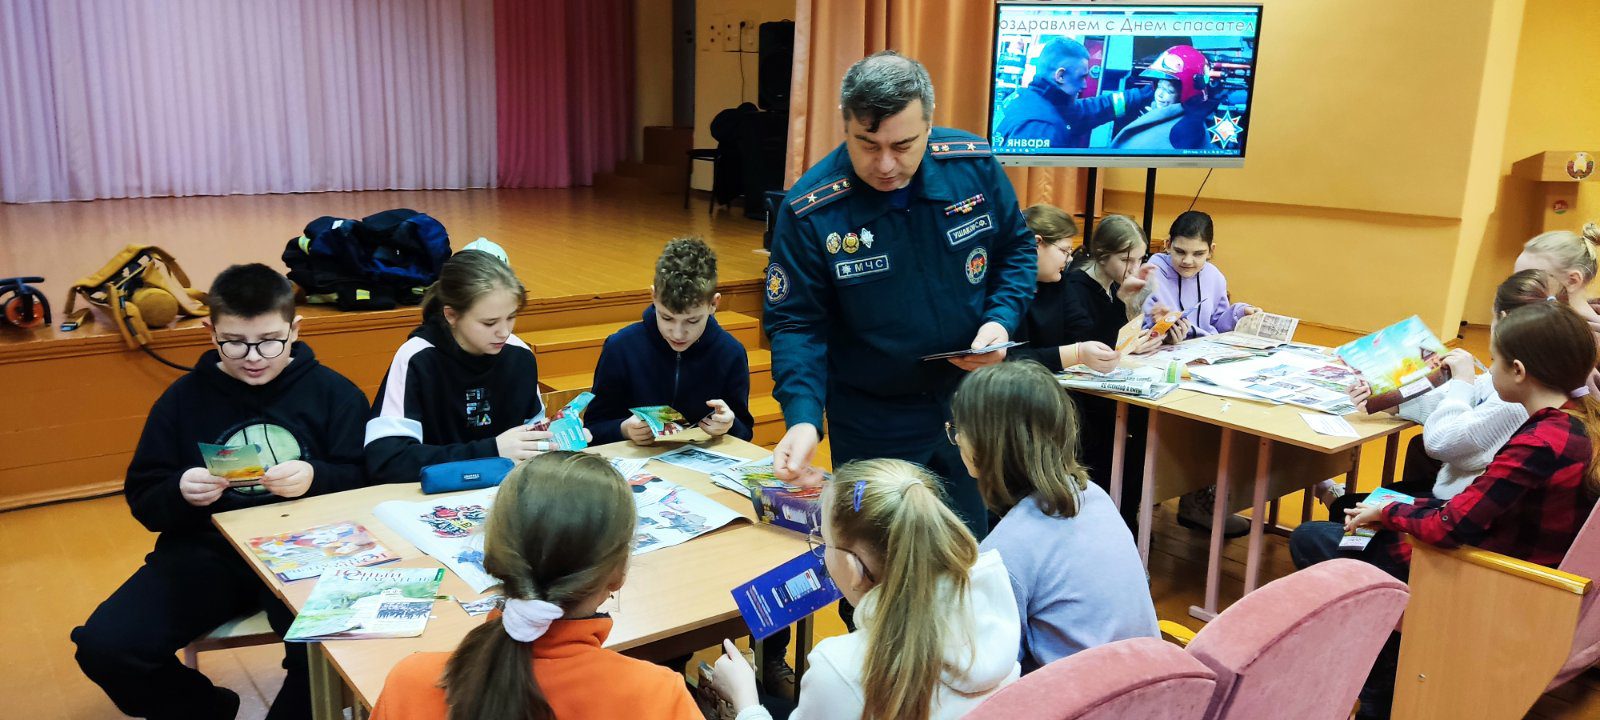 Познавательный урок безопасности провели для школьников работники Костюковичского РОЧС